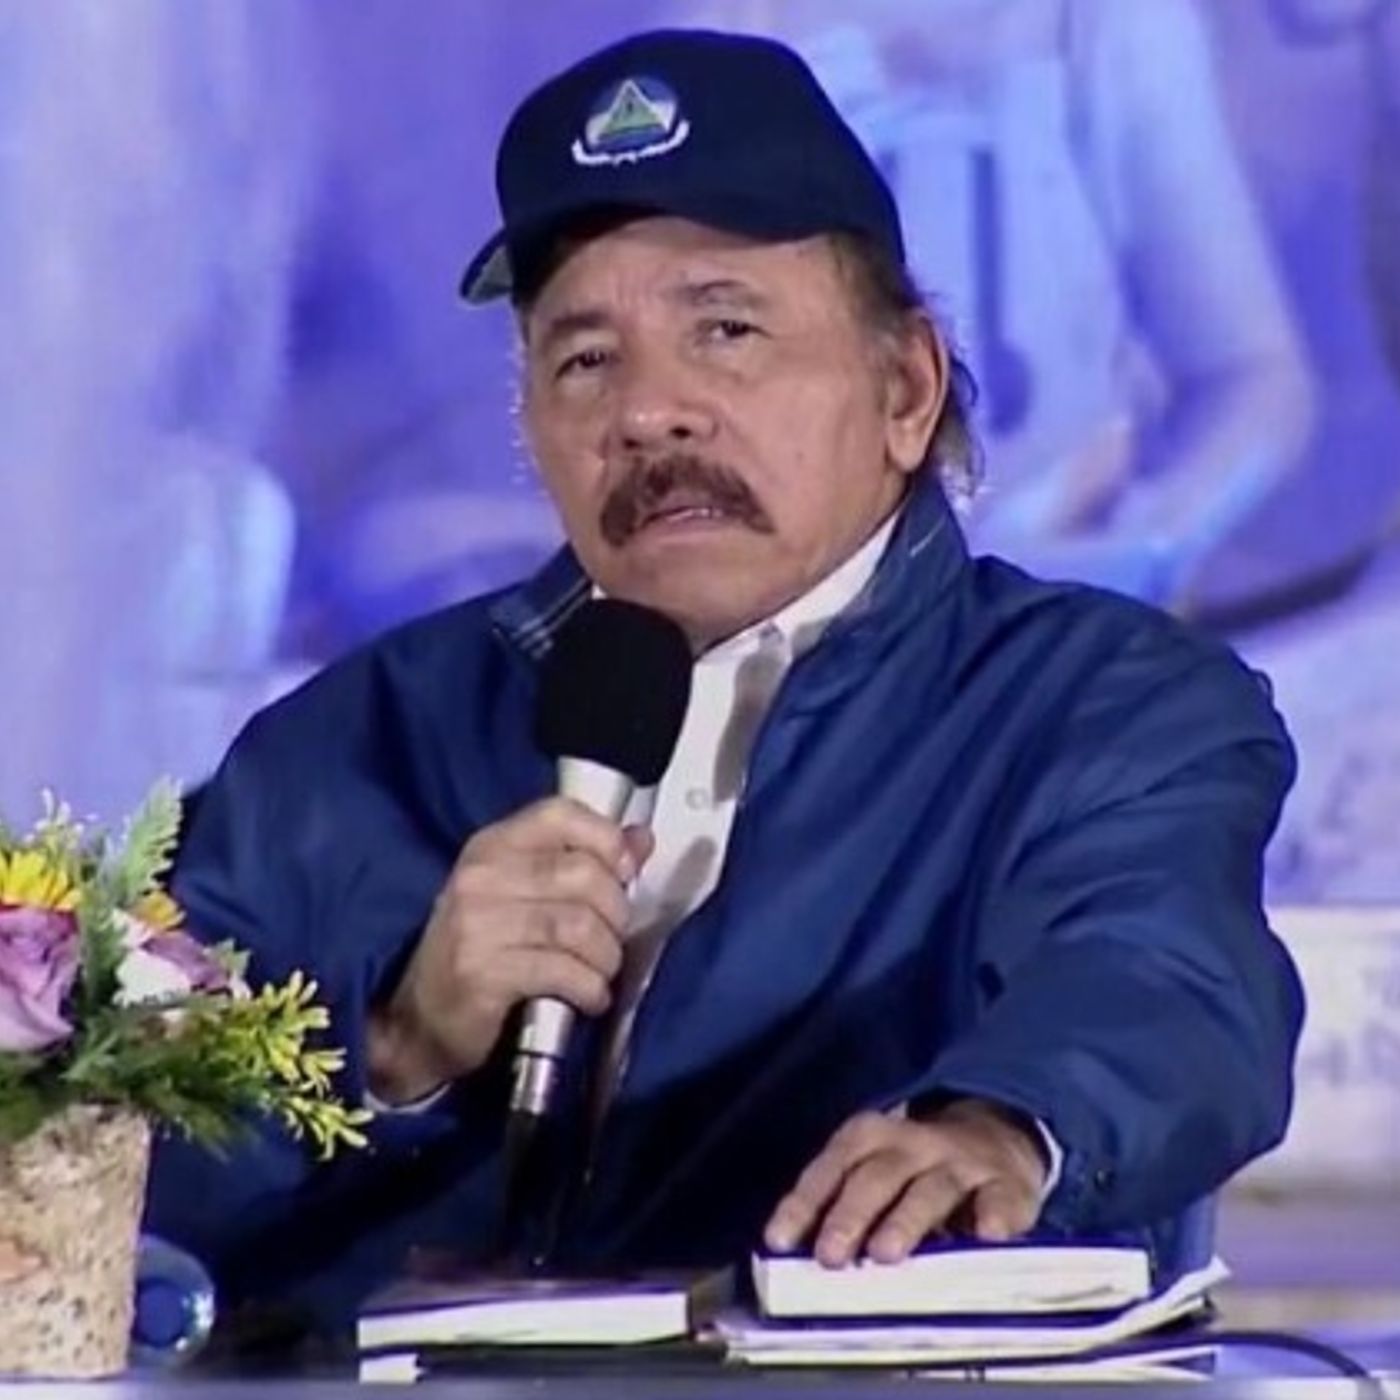 Sectores que negocien con Ortega perderán prestigio, señala analista